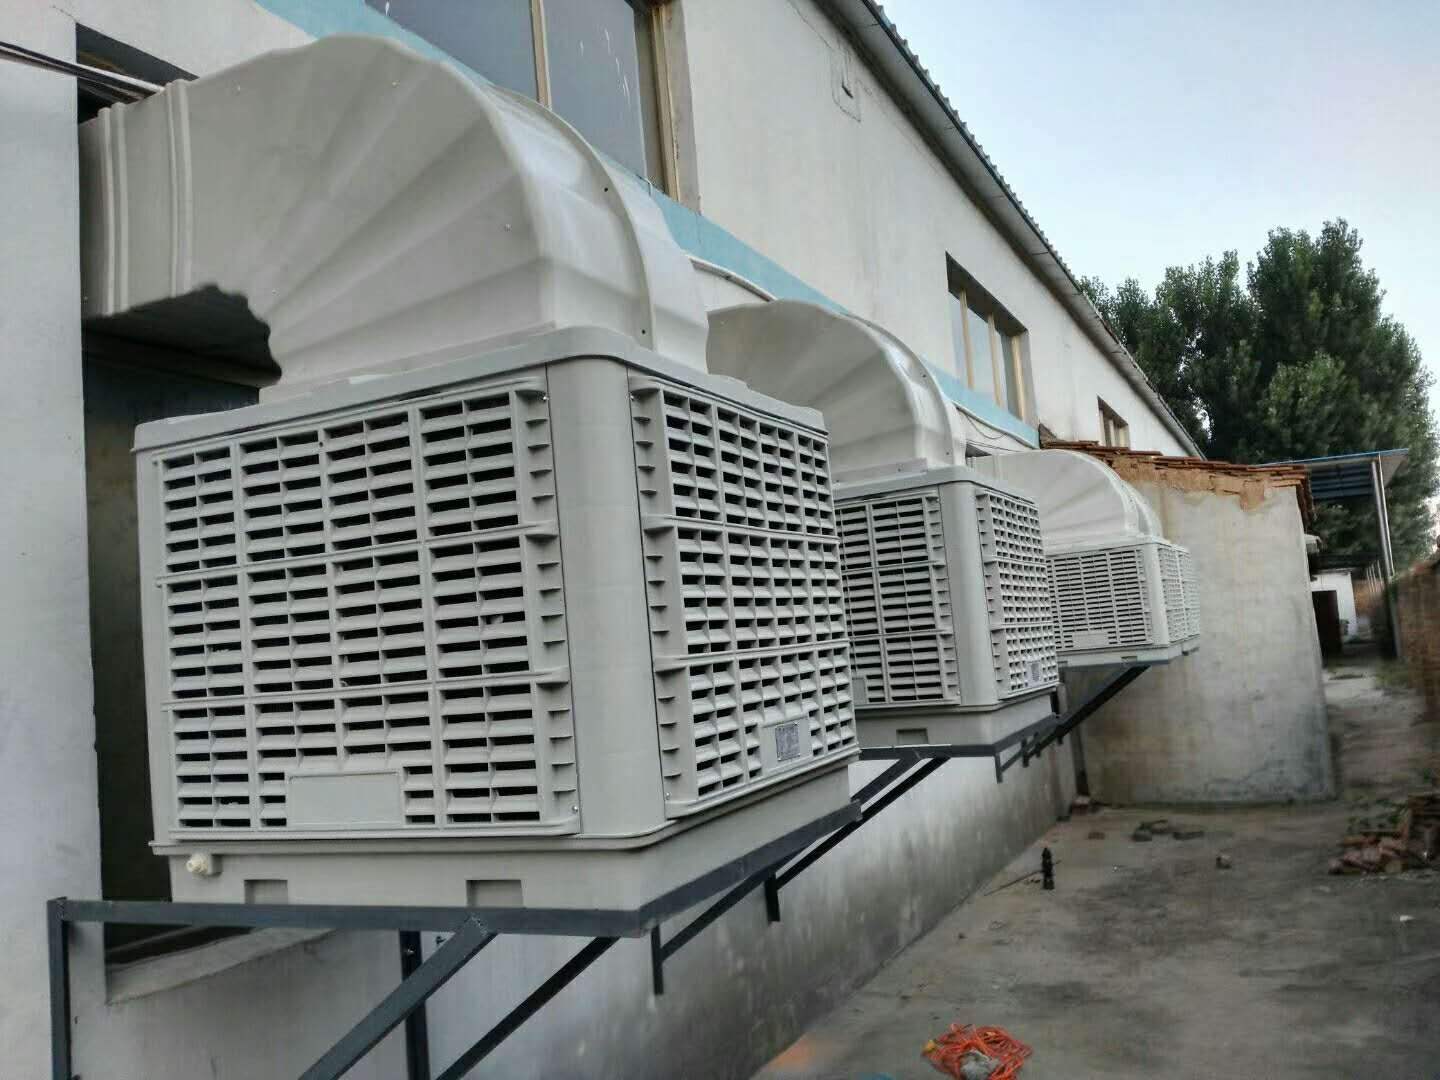 廠房崗位降溫送風方法 廠房管道送風降溫辦法